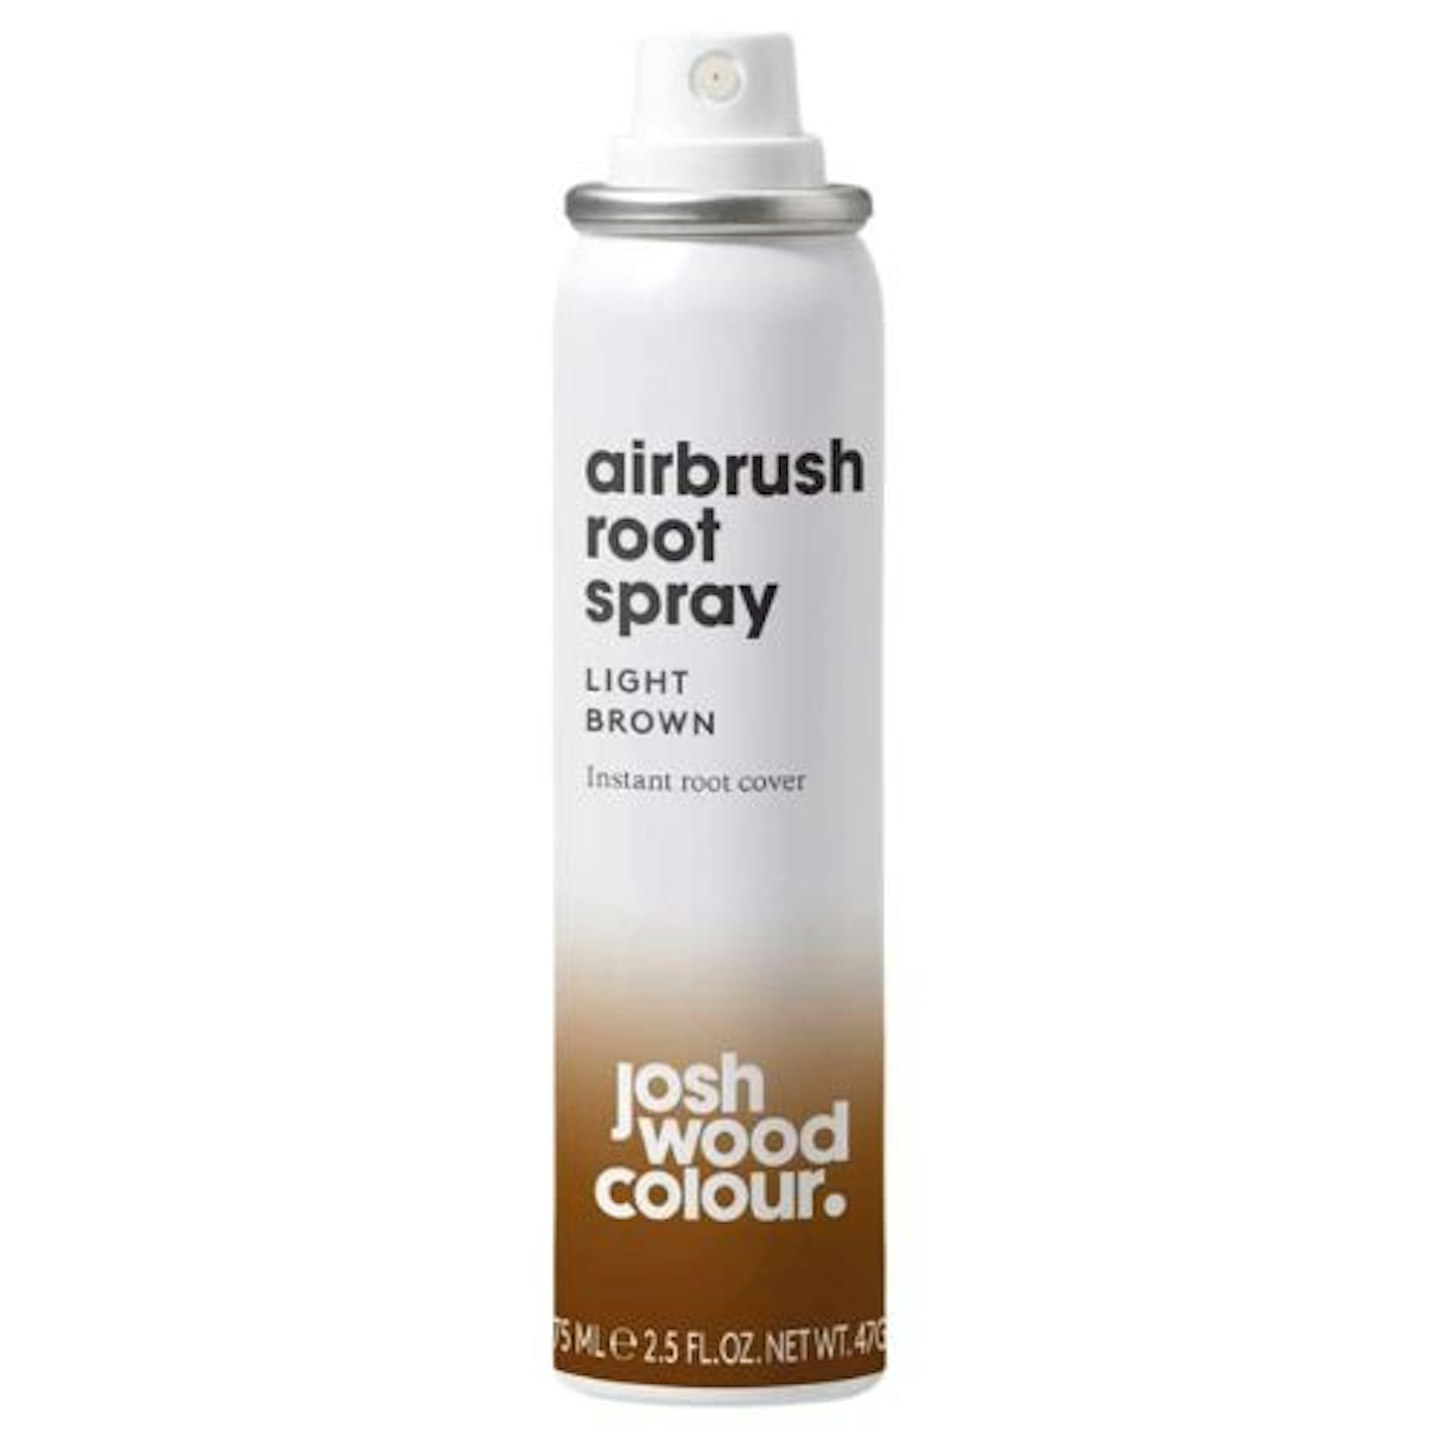 Josh Wood Airbrush Root Spray